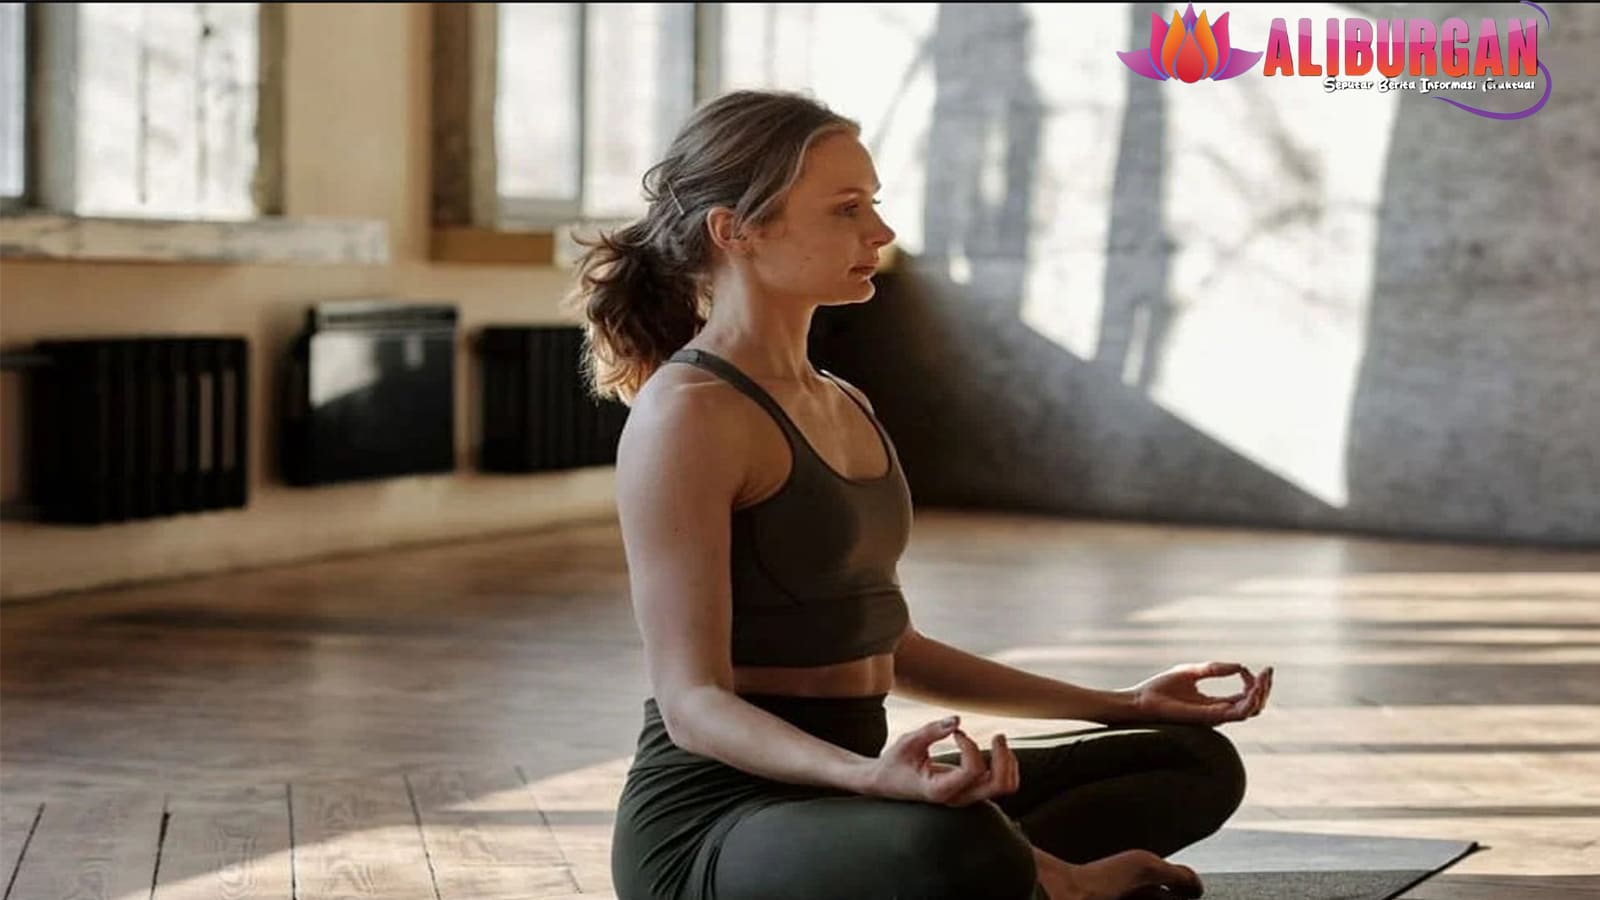 Yoga dan Meditasi